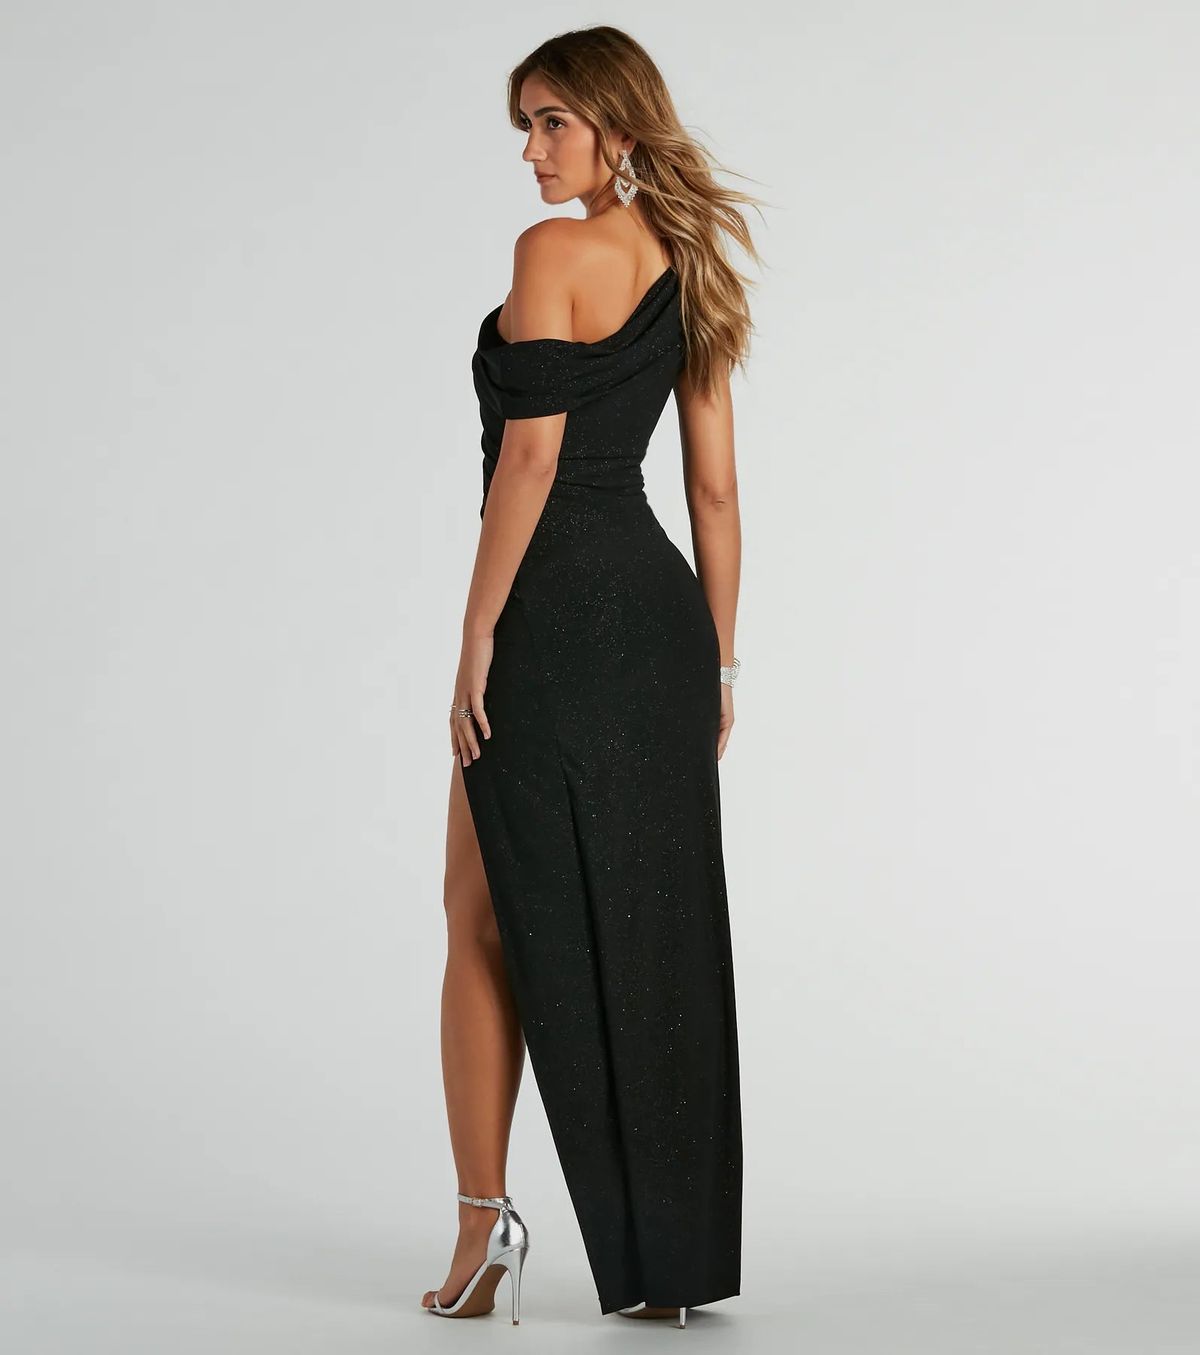 Style 05002-8214 Windsor Size S Bridesmaid One Shoulder Black Side Slit Dress on Queenly